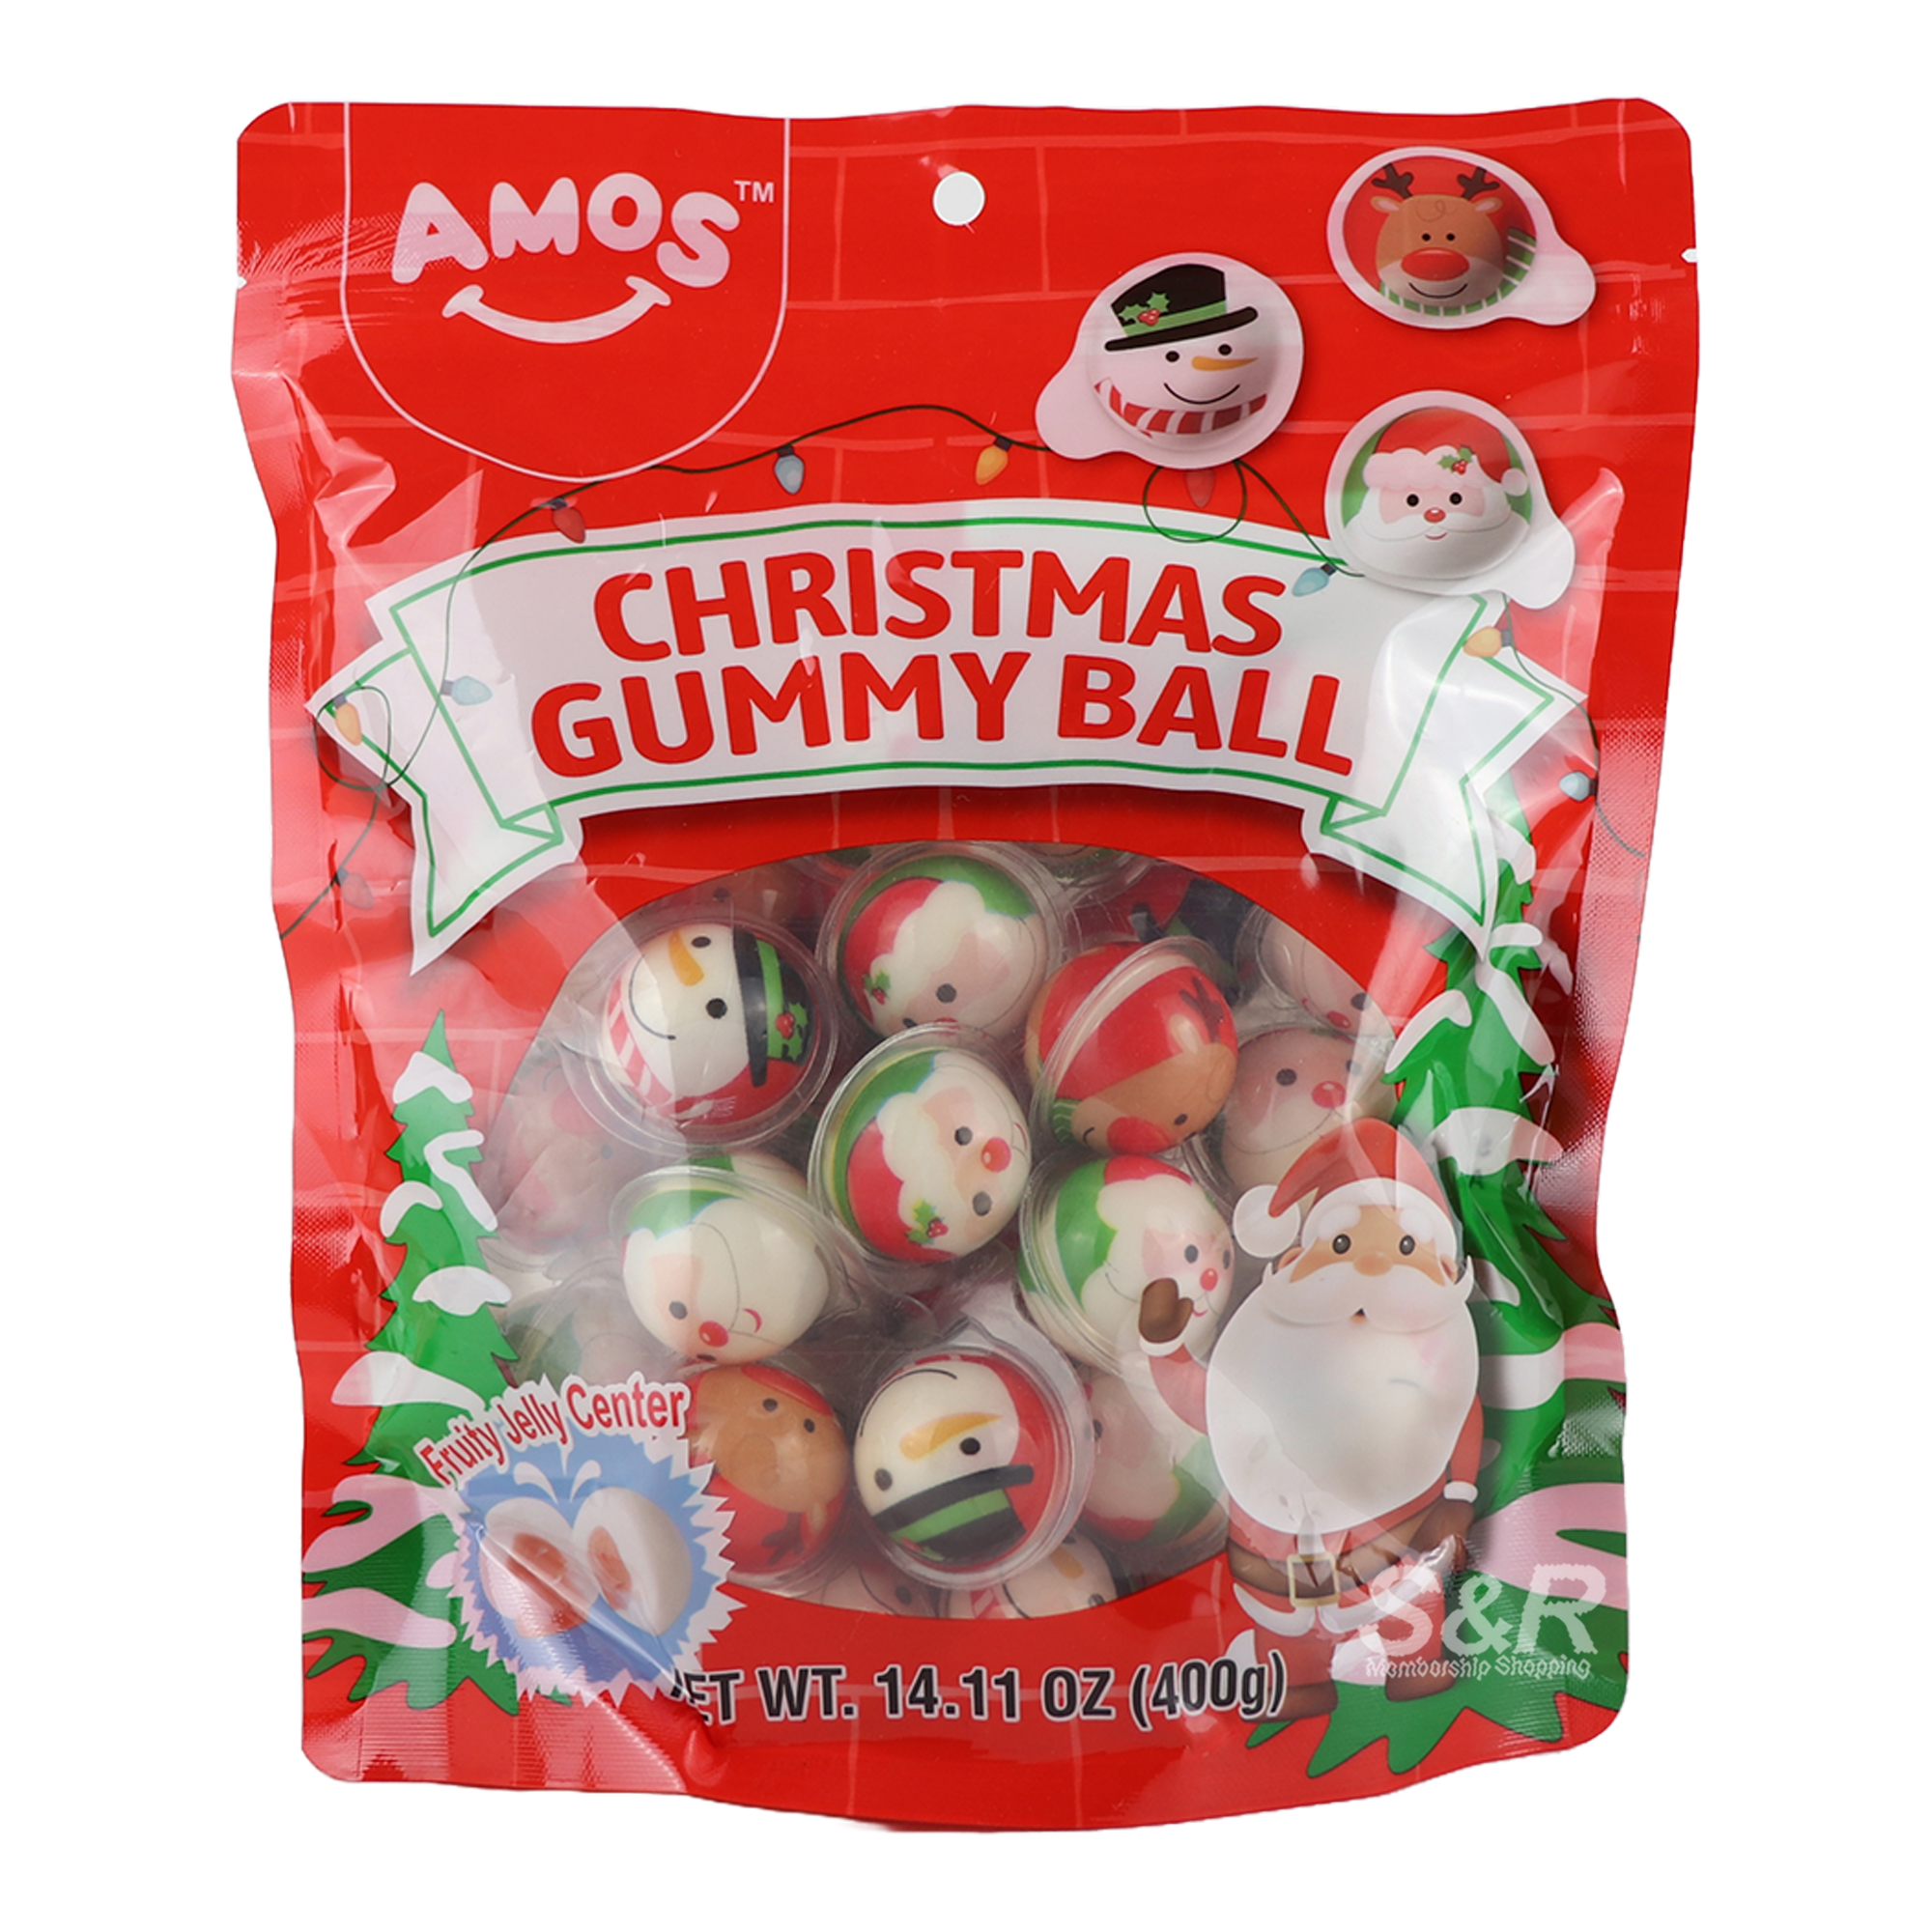 Amos Christmas Gummy Ball 400g